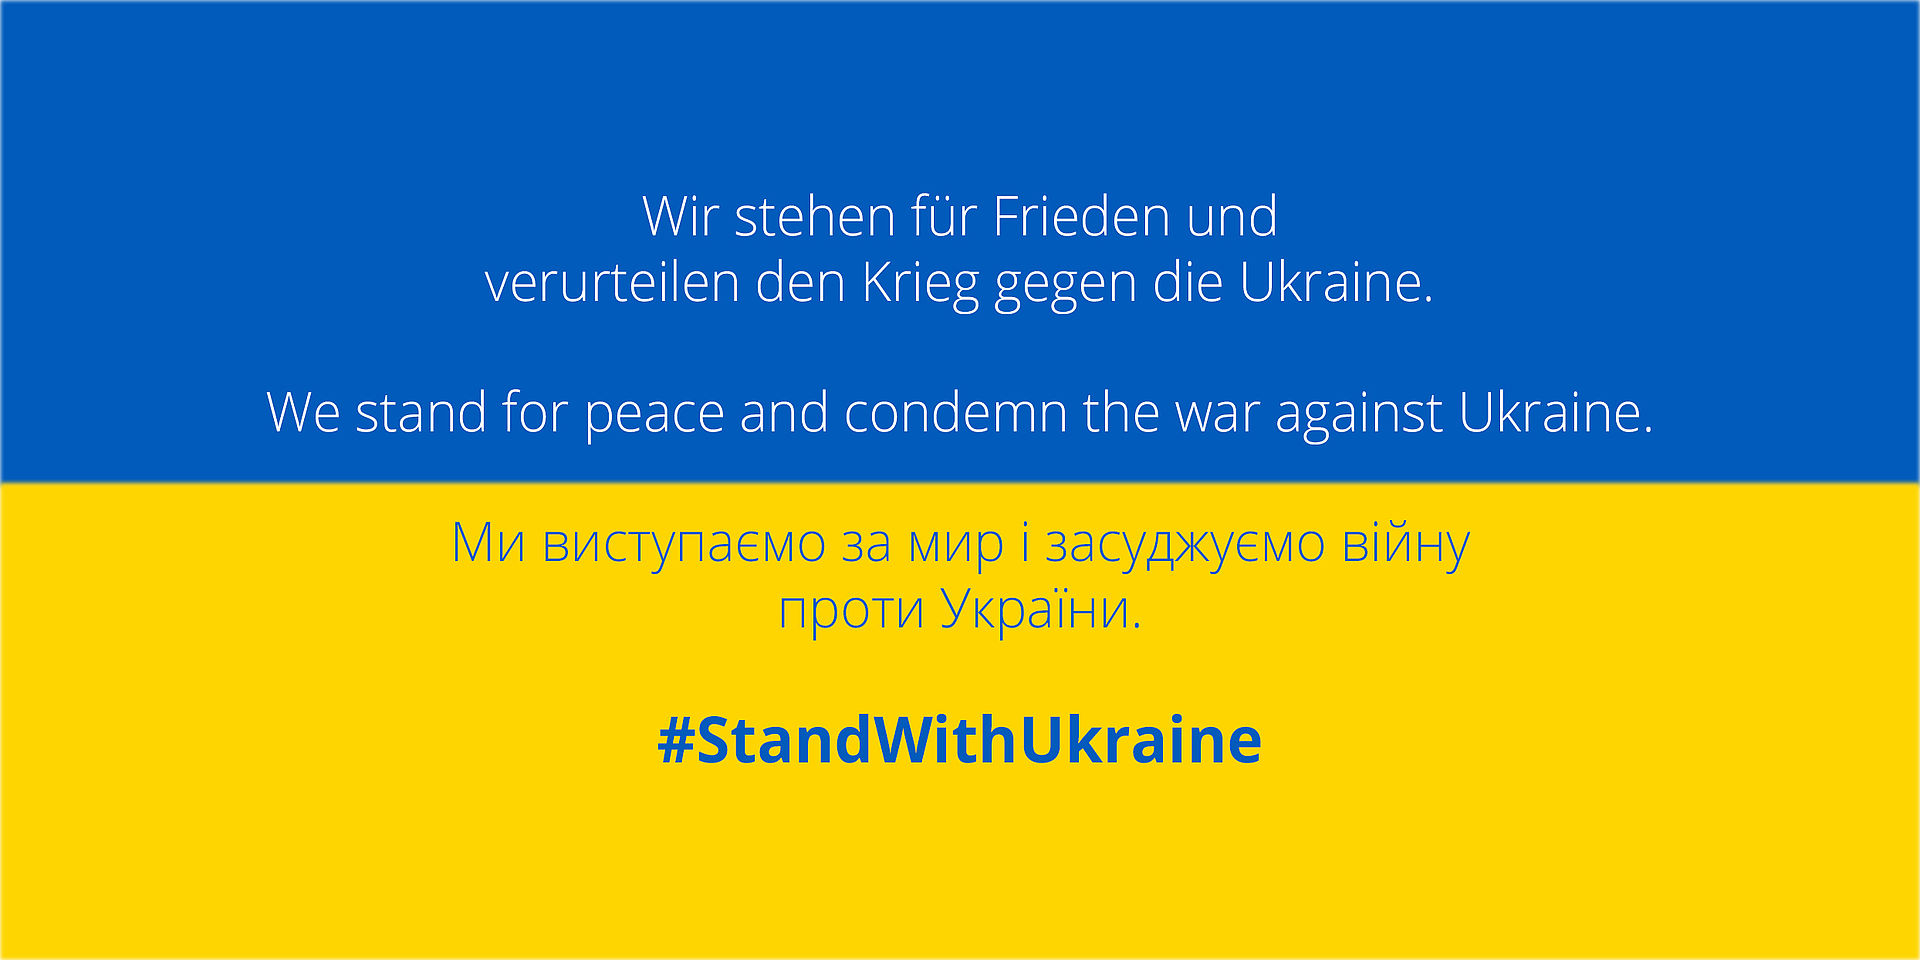 Blau-gelbe ukrainische Flagge mit Statement